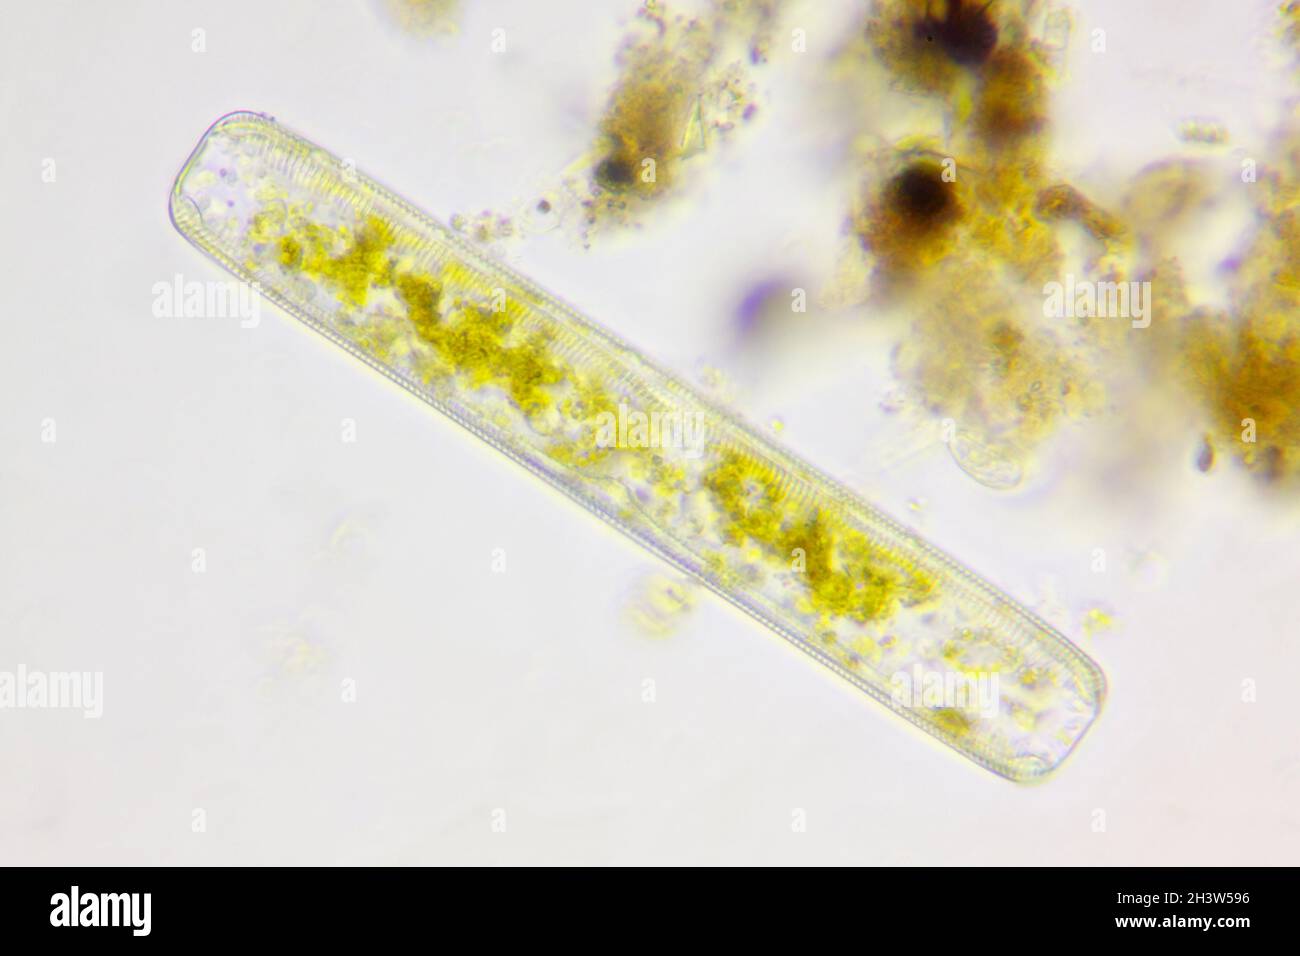 Mikroskopische Ansicht einer Kieselalge (Navicula). Hellfeldbeleuchtung. Stockfoto